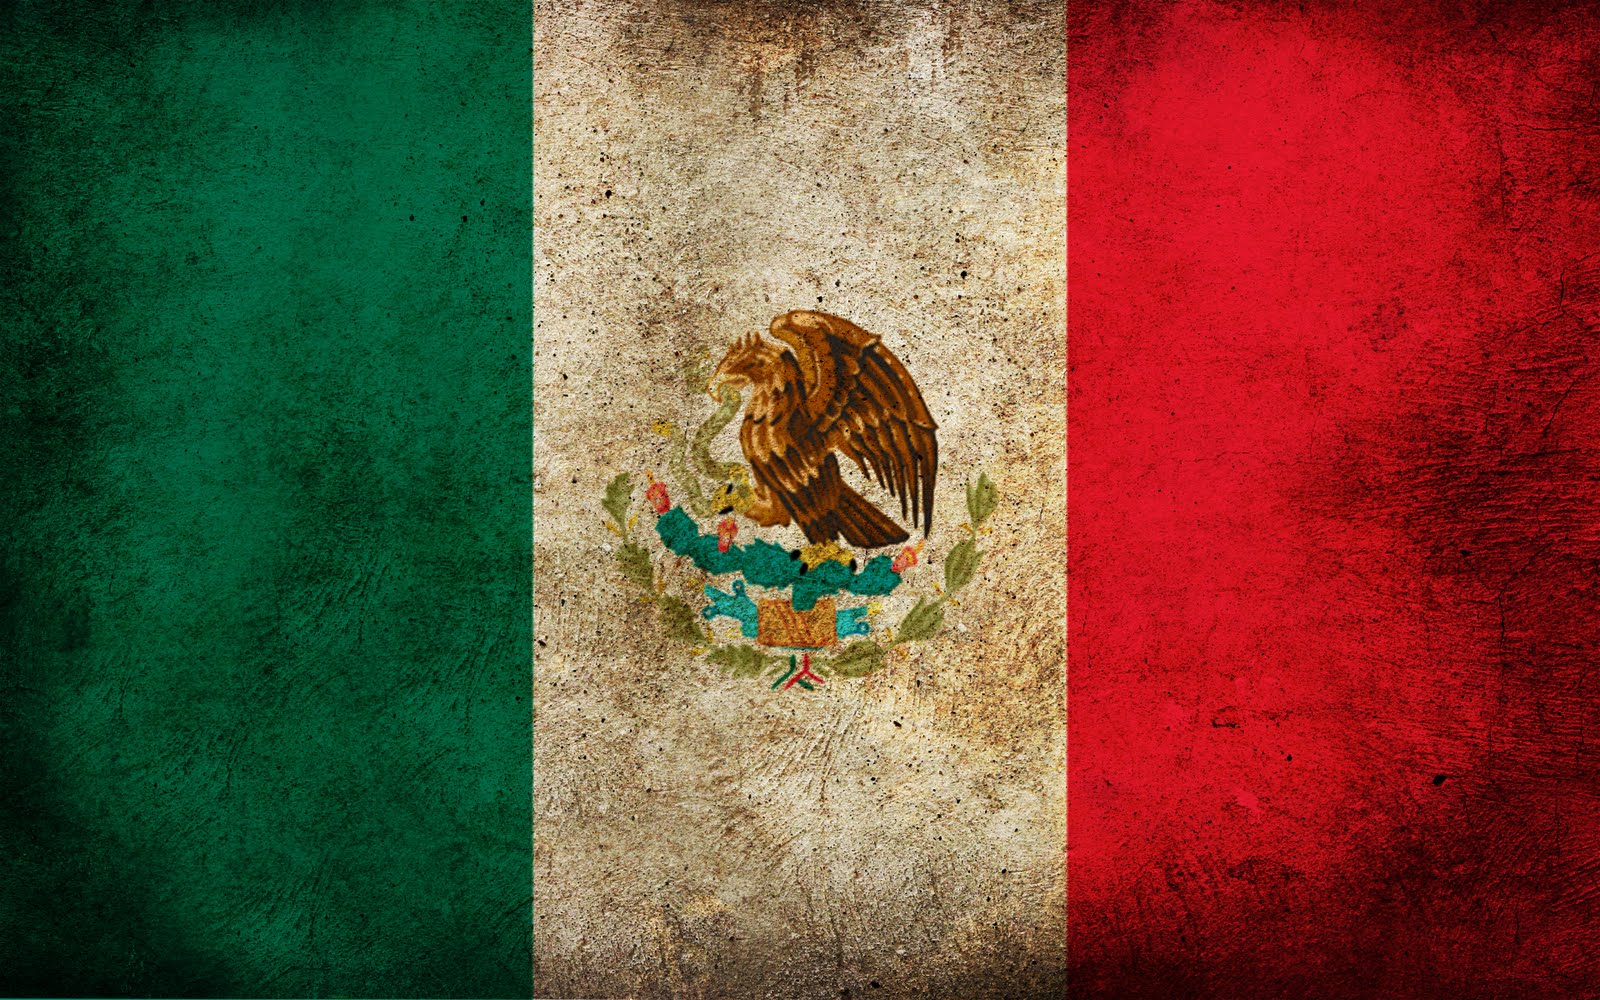  Mexico fondos de escritorio de Mexico wallpapers de Mexico gratis